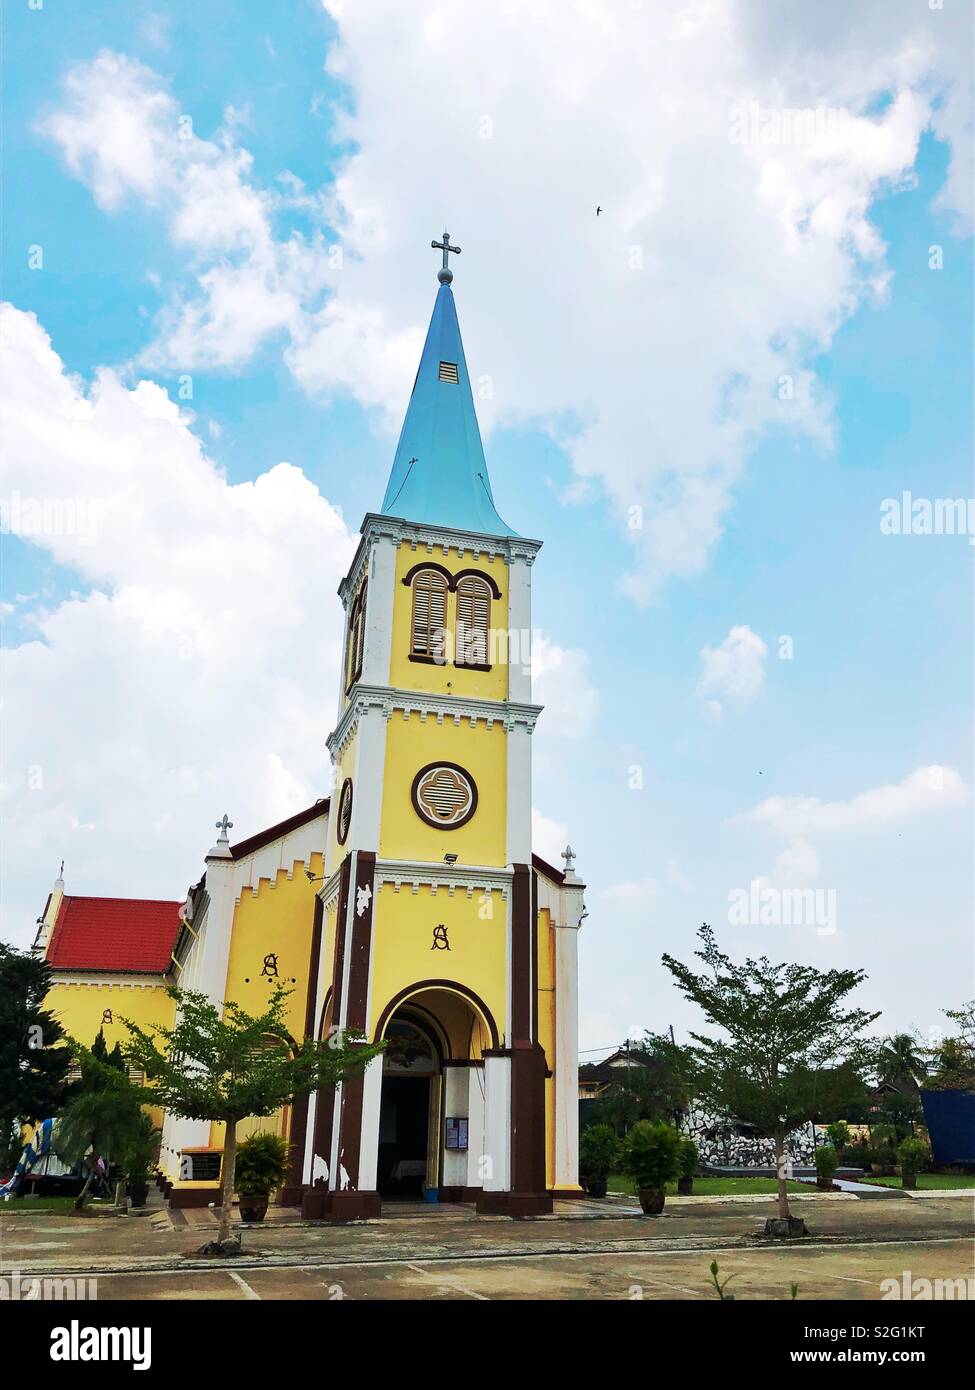 A lovely church in Teluk Intan, Perak, Malaysia Stock Photo